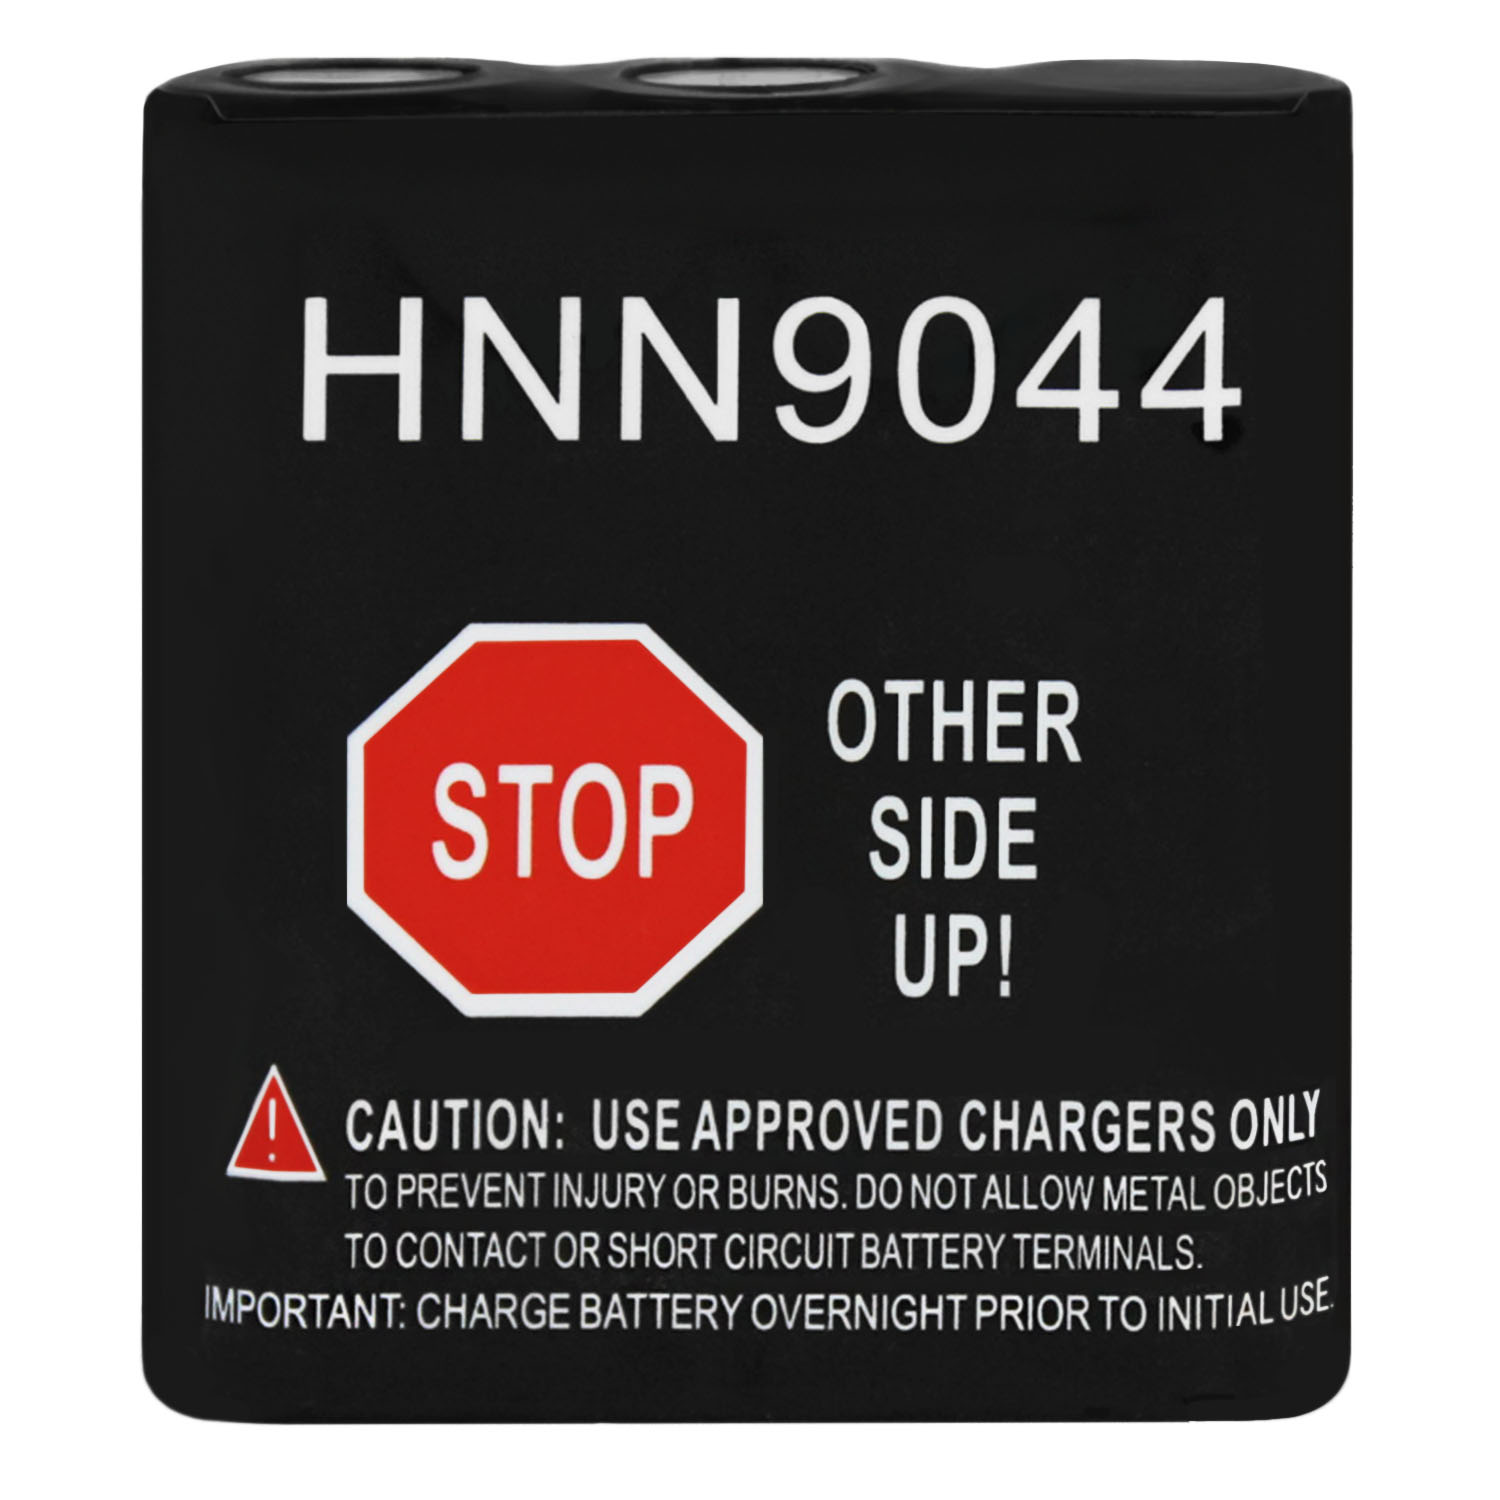 HNN9044 Battery for Motorola PRO1150,SP10,SP21 - 3 Pack